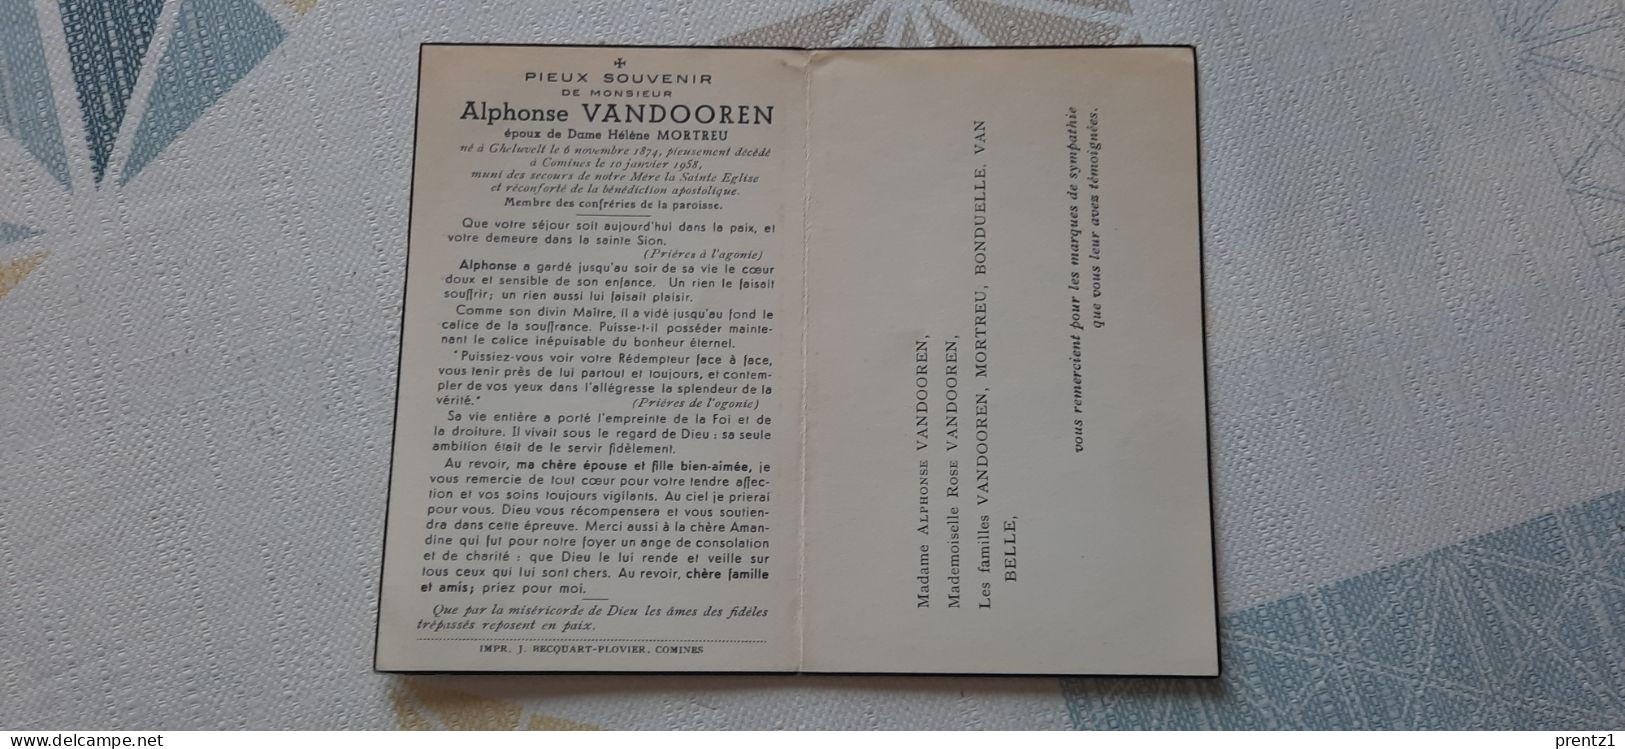 Alphonse Vandooren Geb.Gheluvelt 6/11/1874- Getr. H. Mortreu - Gest. Komen 10/01/1958 - Devotieprenten